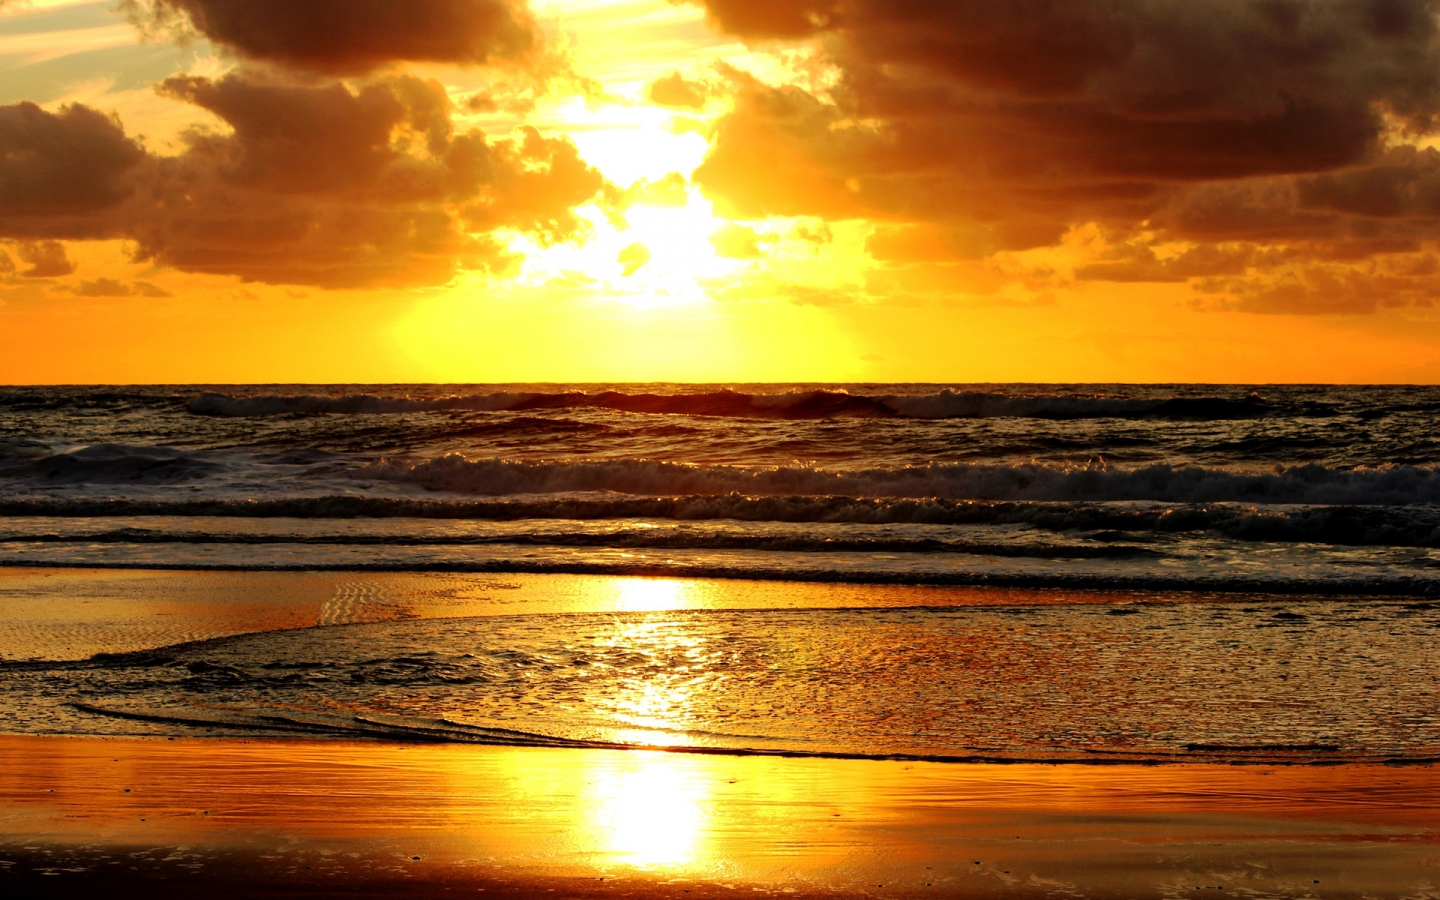 Golden Sunset for 1440 x 900 widescreen resolution